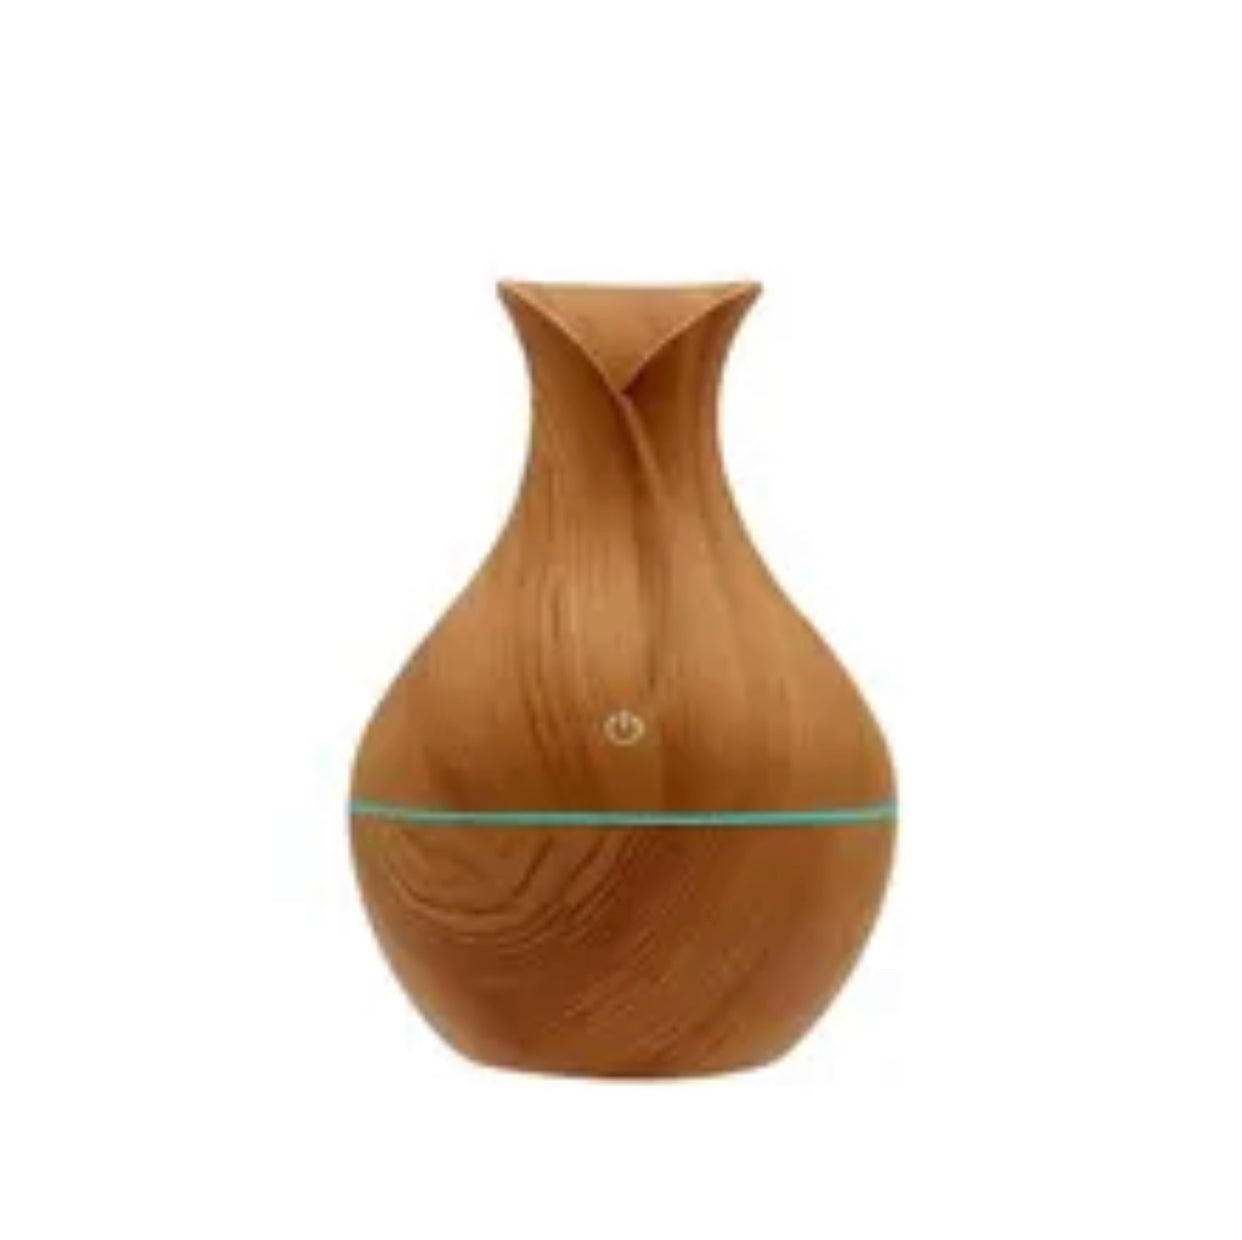 Vase en grain de bois - diffuseur - humidificateur : le naturel rencontre la technologie moderne